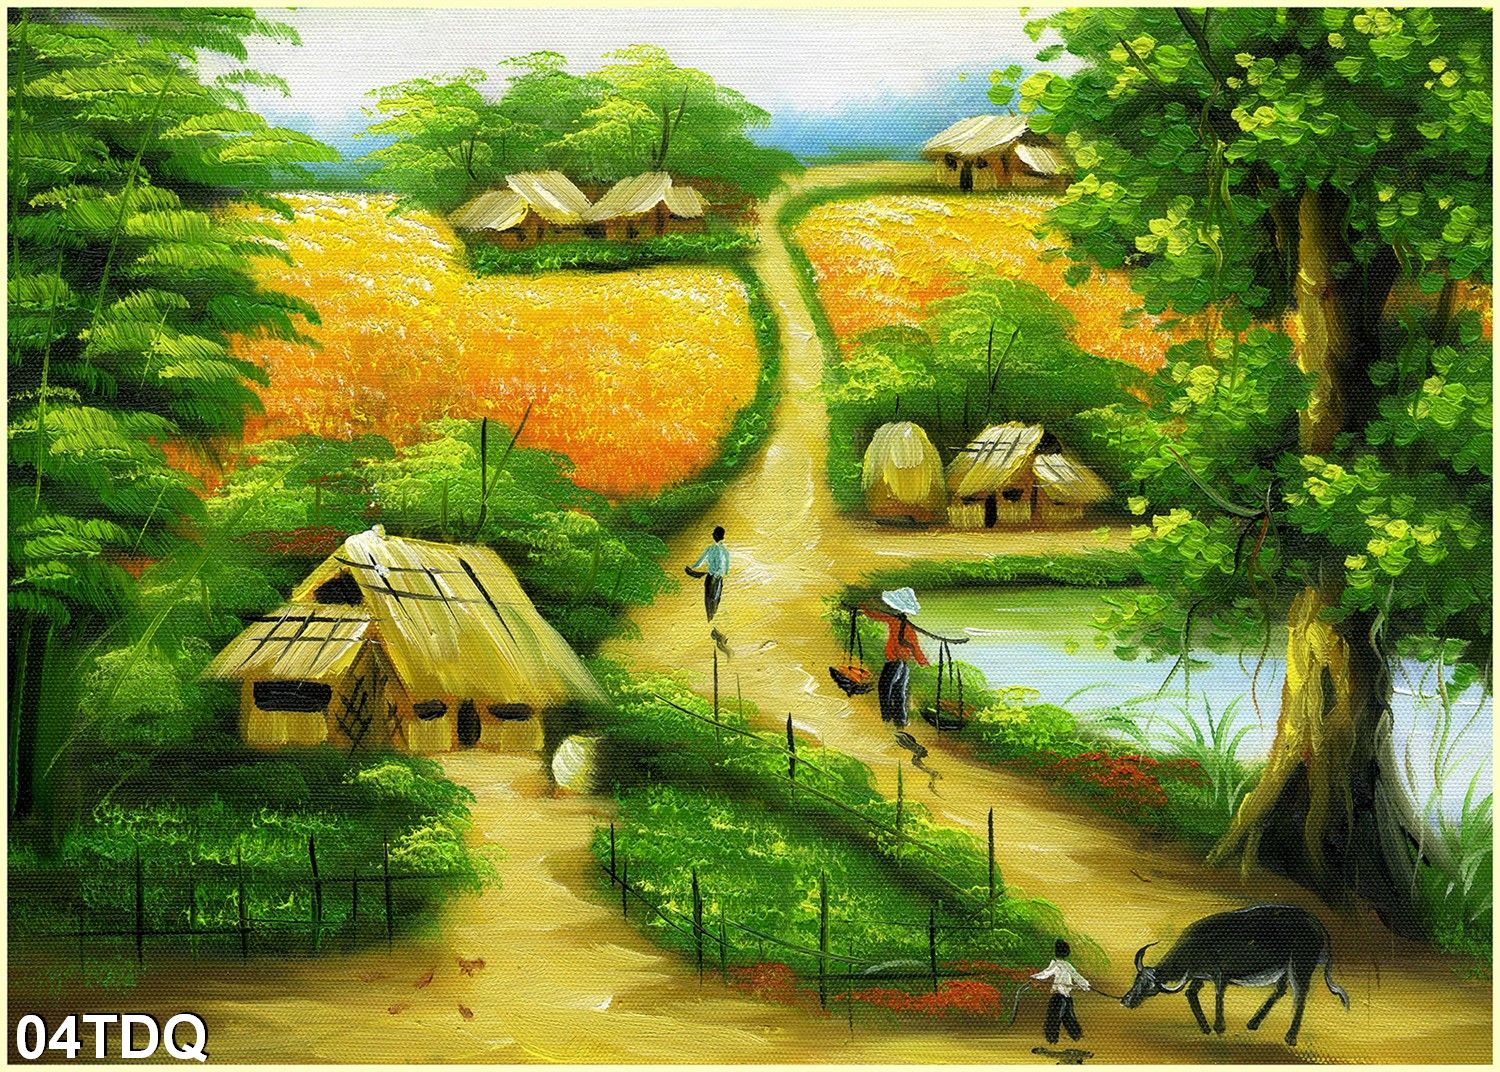 Chiêm ngưỡng vẻ đẹp hoang sơ của làng quê Việt Nam với bộ tranh dán tường phong cảnh đầy màu sắc và sống động. Những hình ảnh về đồng cỏ, con đường làng, những ngôi nhà cổ, hay những bức tranh về bà con làng đang làm việc đều sẽ mang đến cho bạn cảm giác như đang thực sự đứng giữa làng quê yên bình.